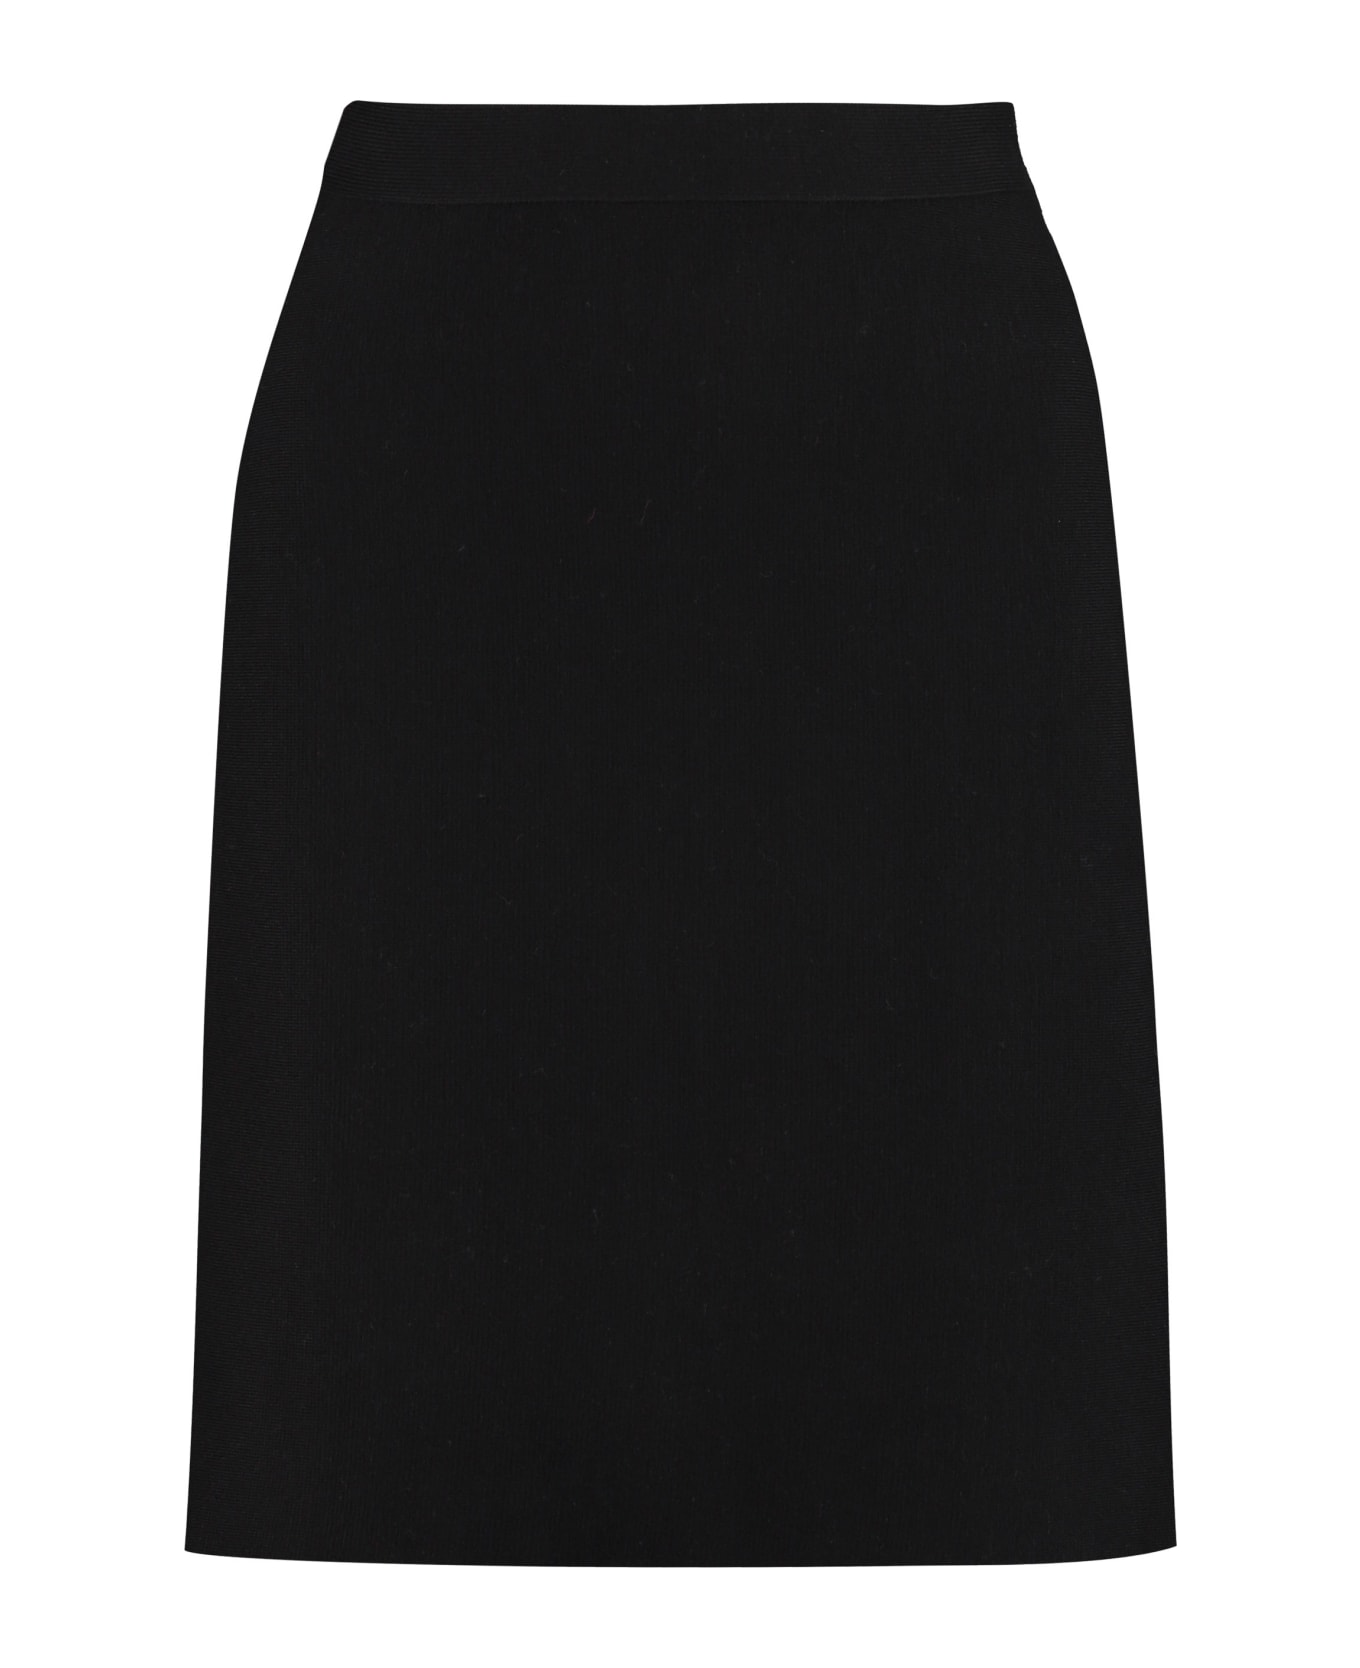 Bottega Veneta Knitted Mini Skirt - black スカート